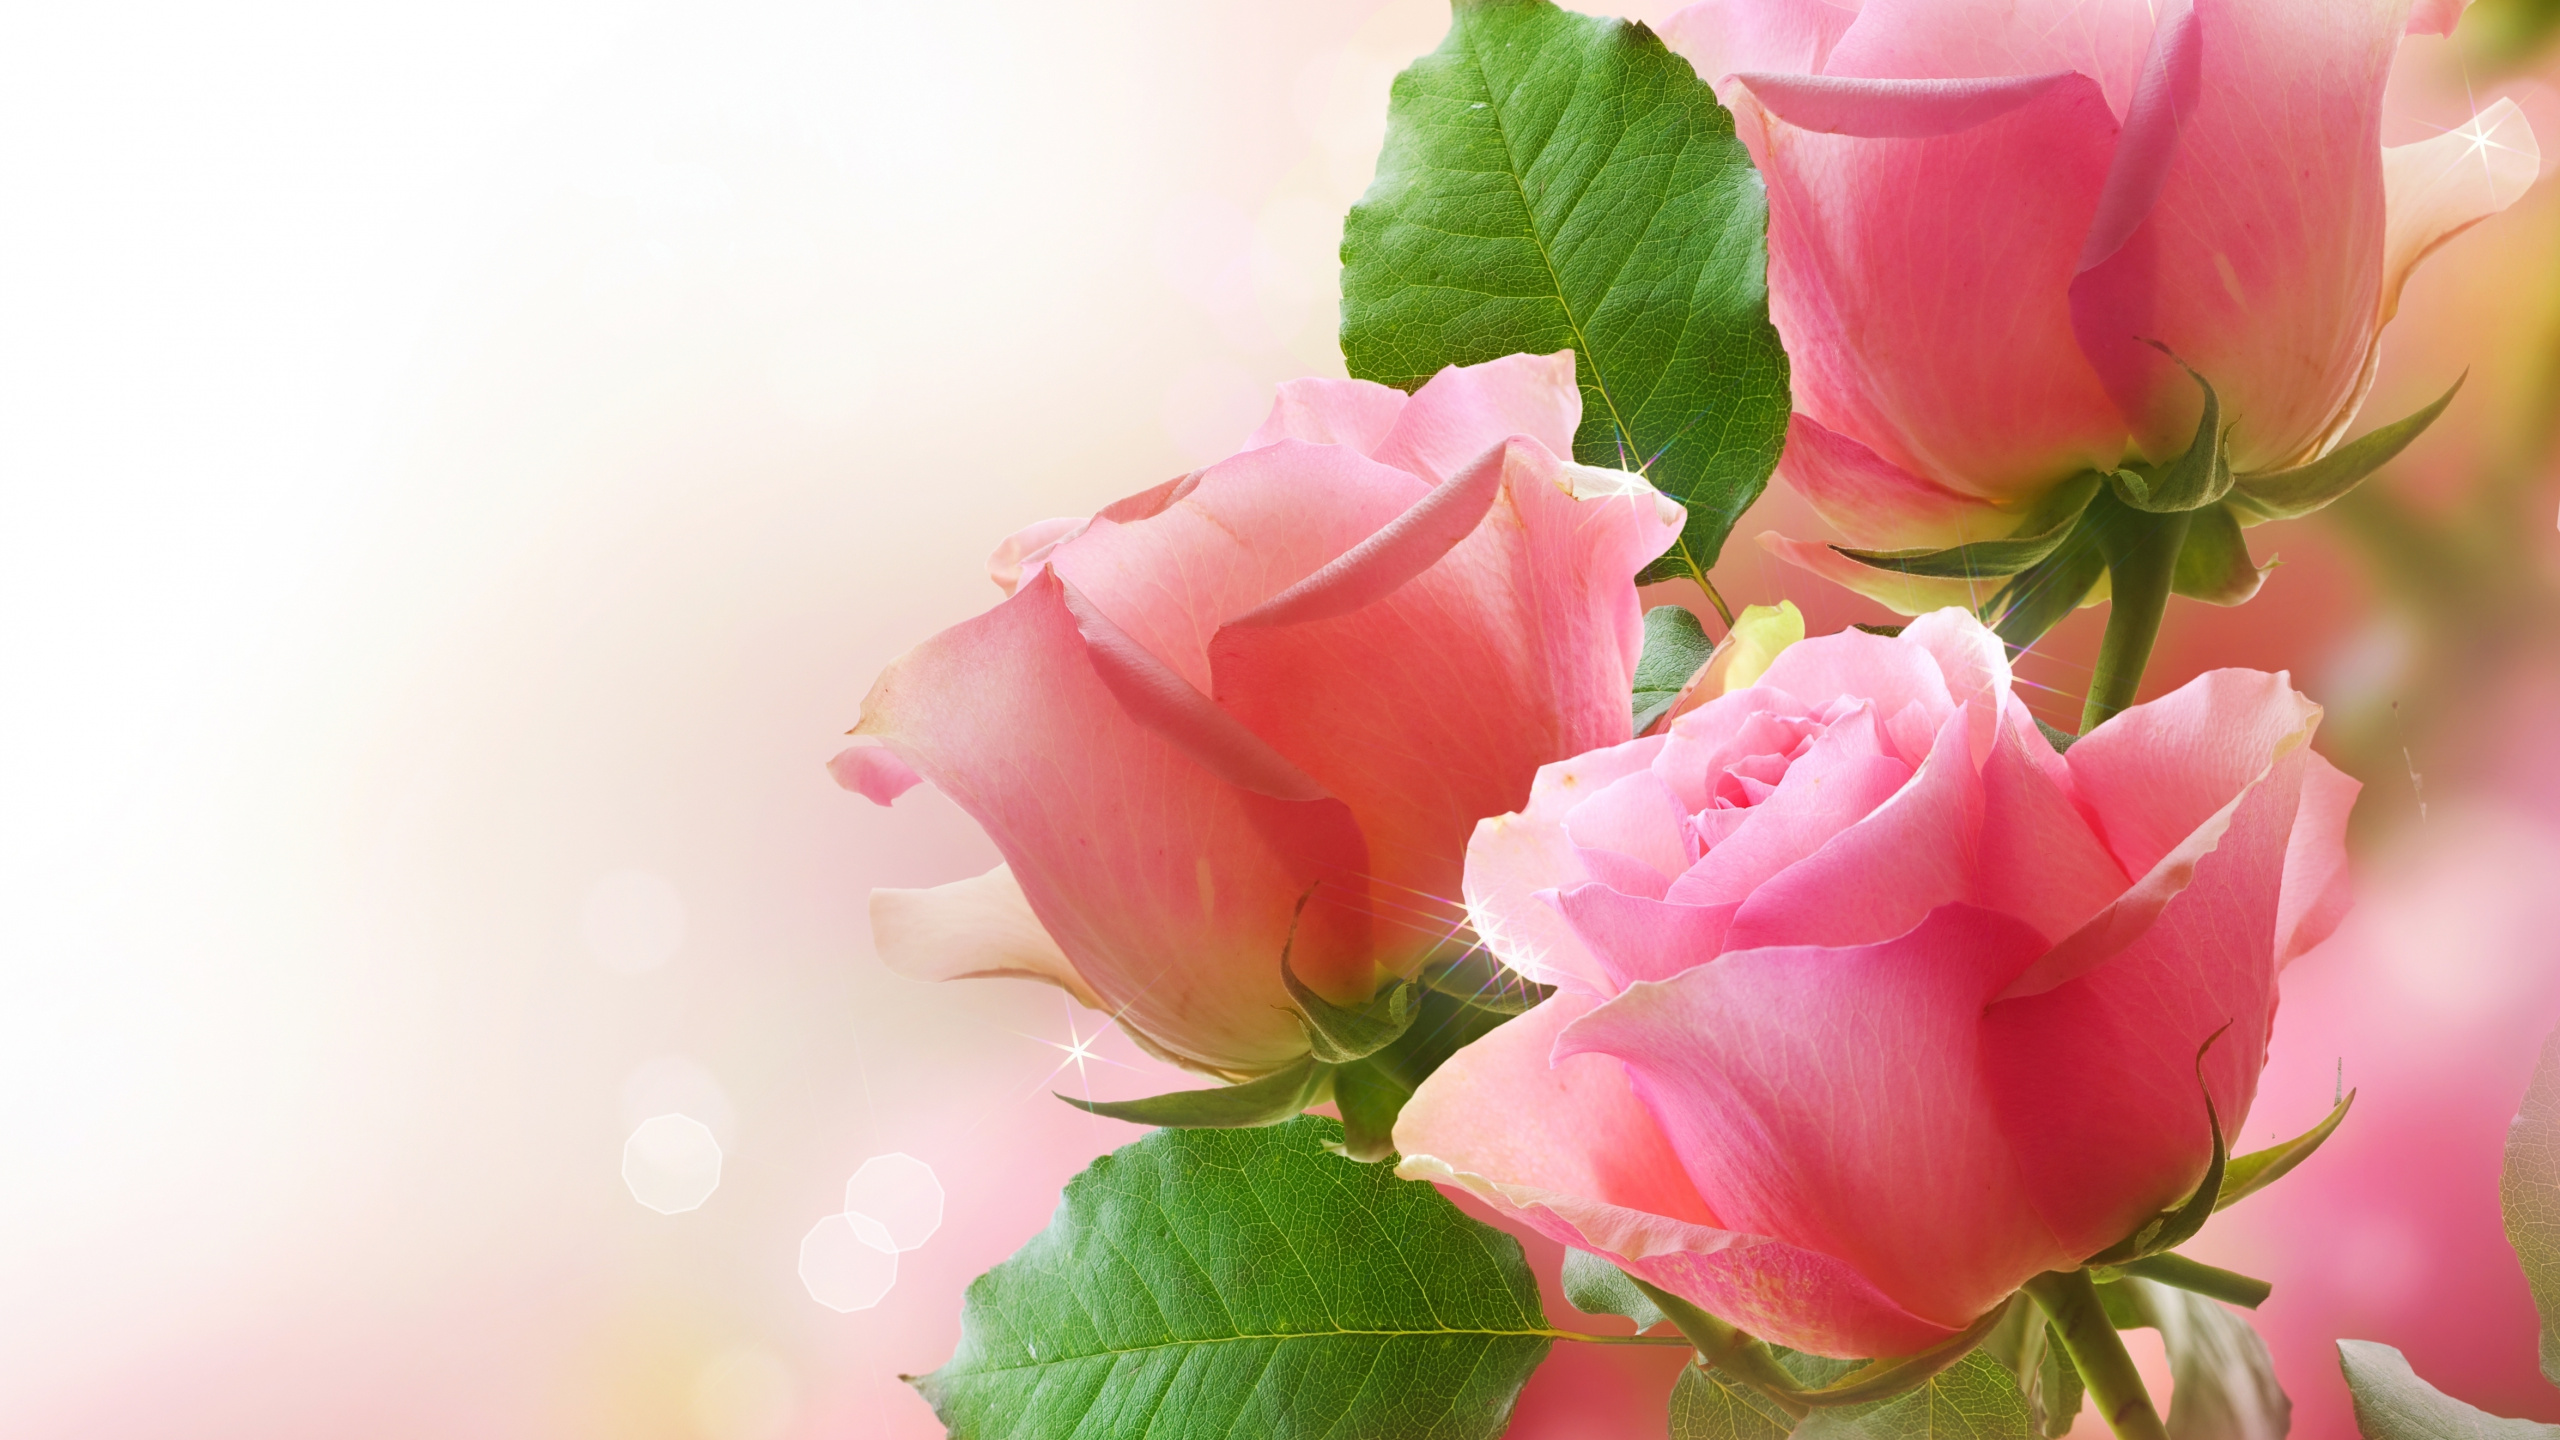 花卉设计, 粉红色, 显花植物, 玫瑰花园, 玫瑰家庭 壁纸 2560x1440 允许